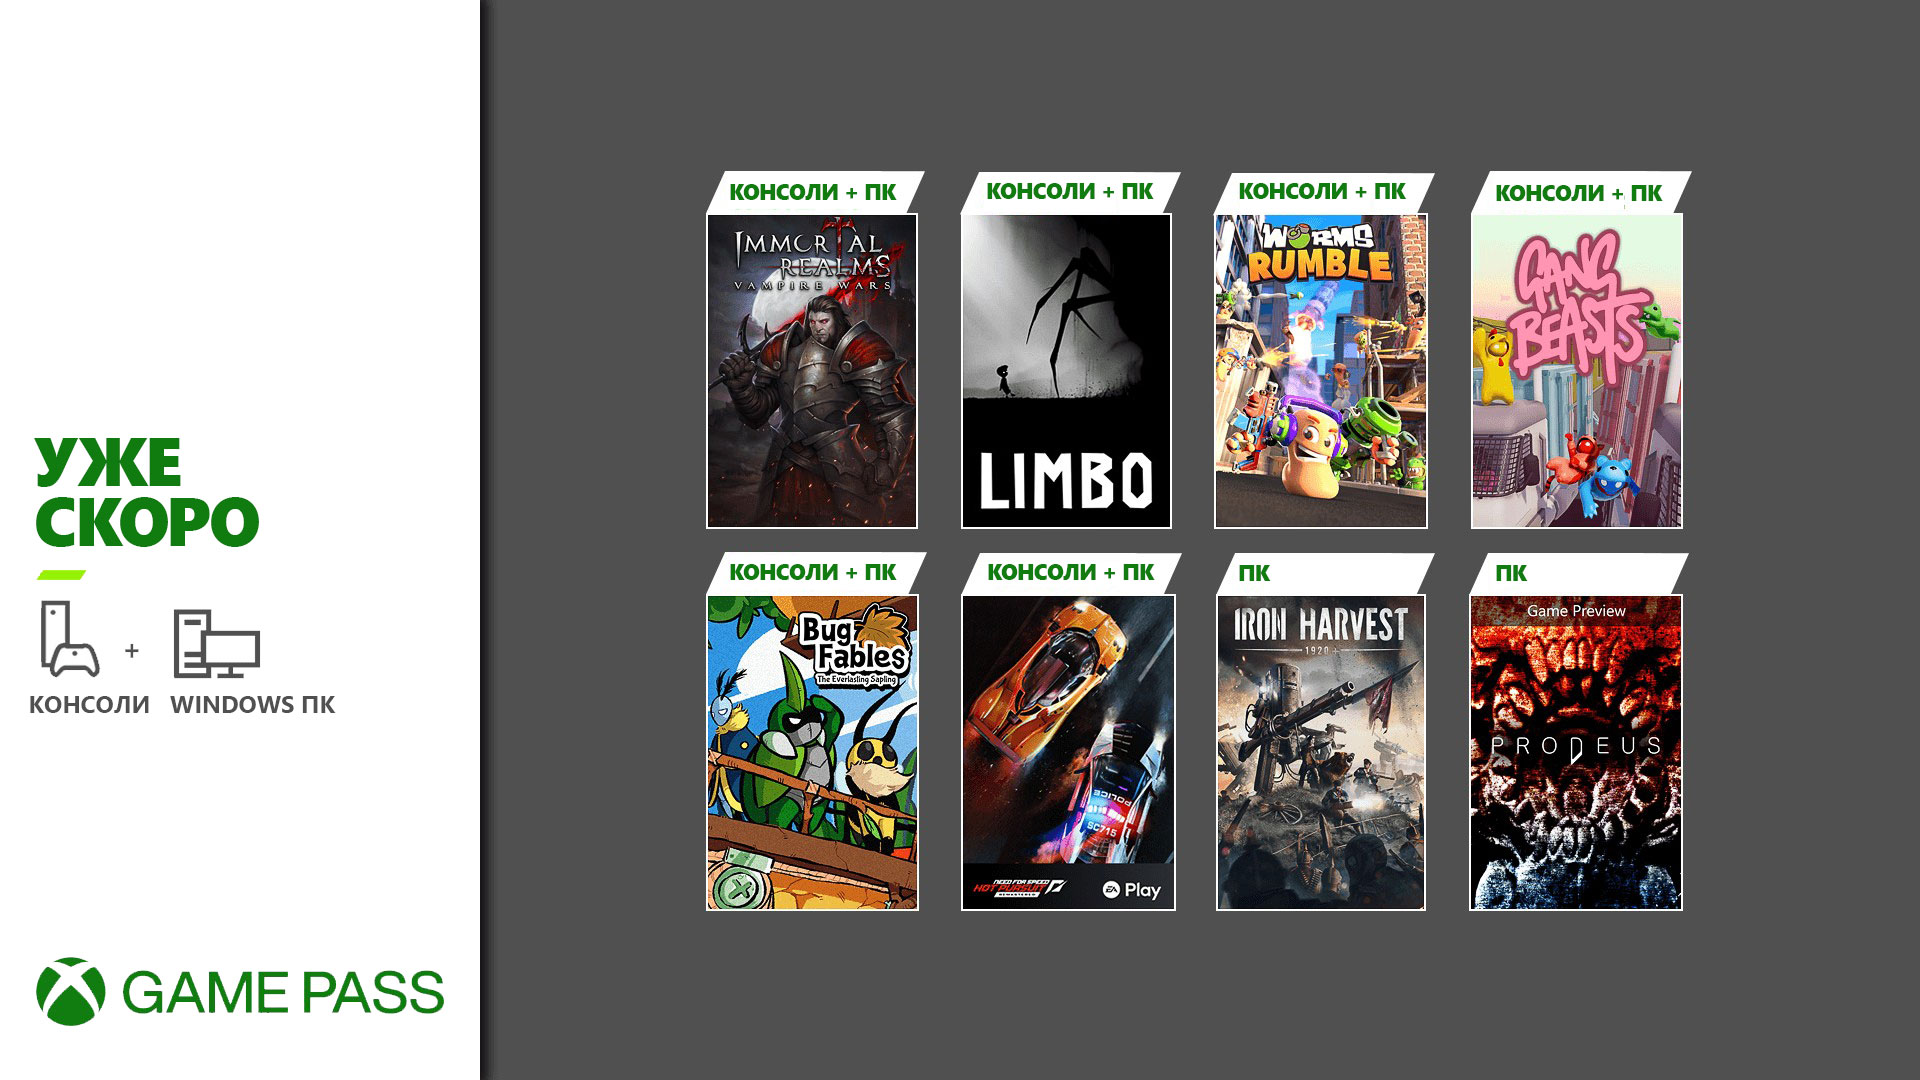 Обложки игр которые Скоро появтяся в Xbox Game Pass: Gang Beasts, Limbo, Prodeus и многое другое